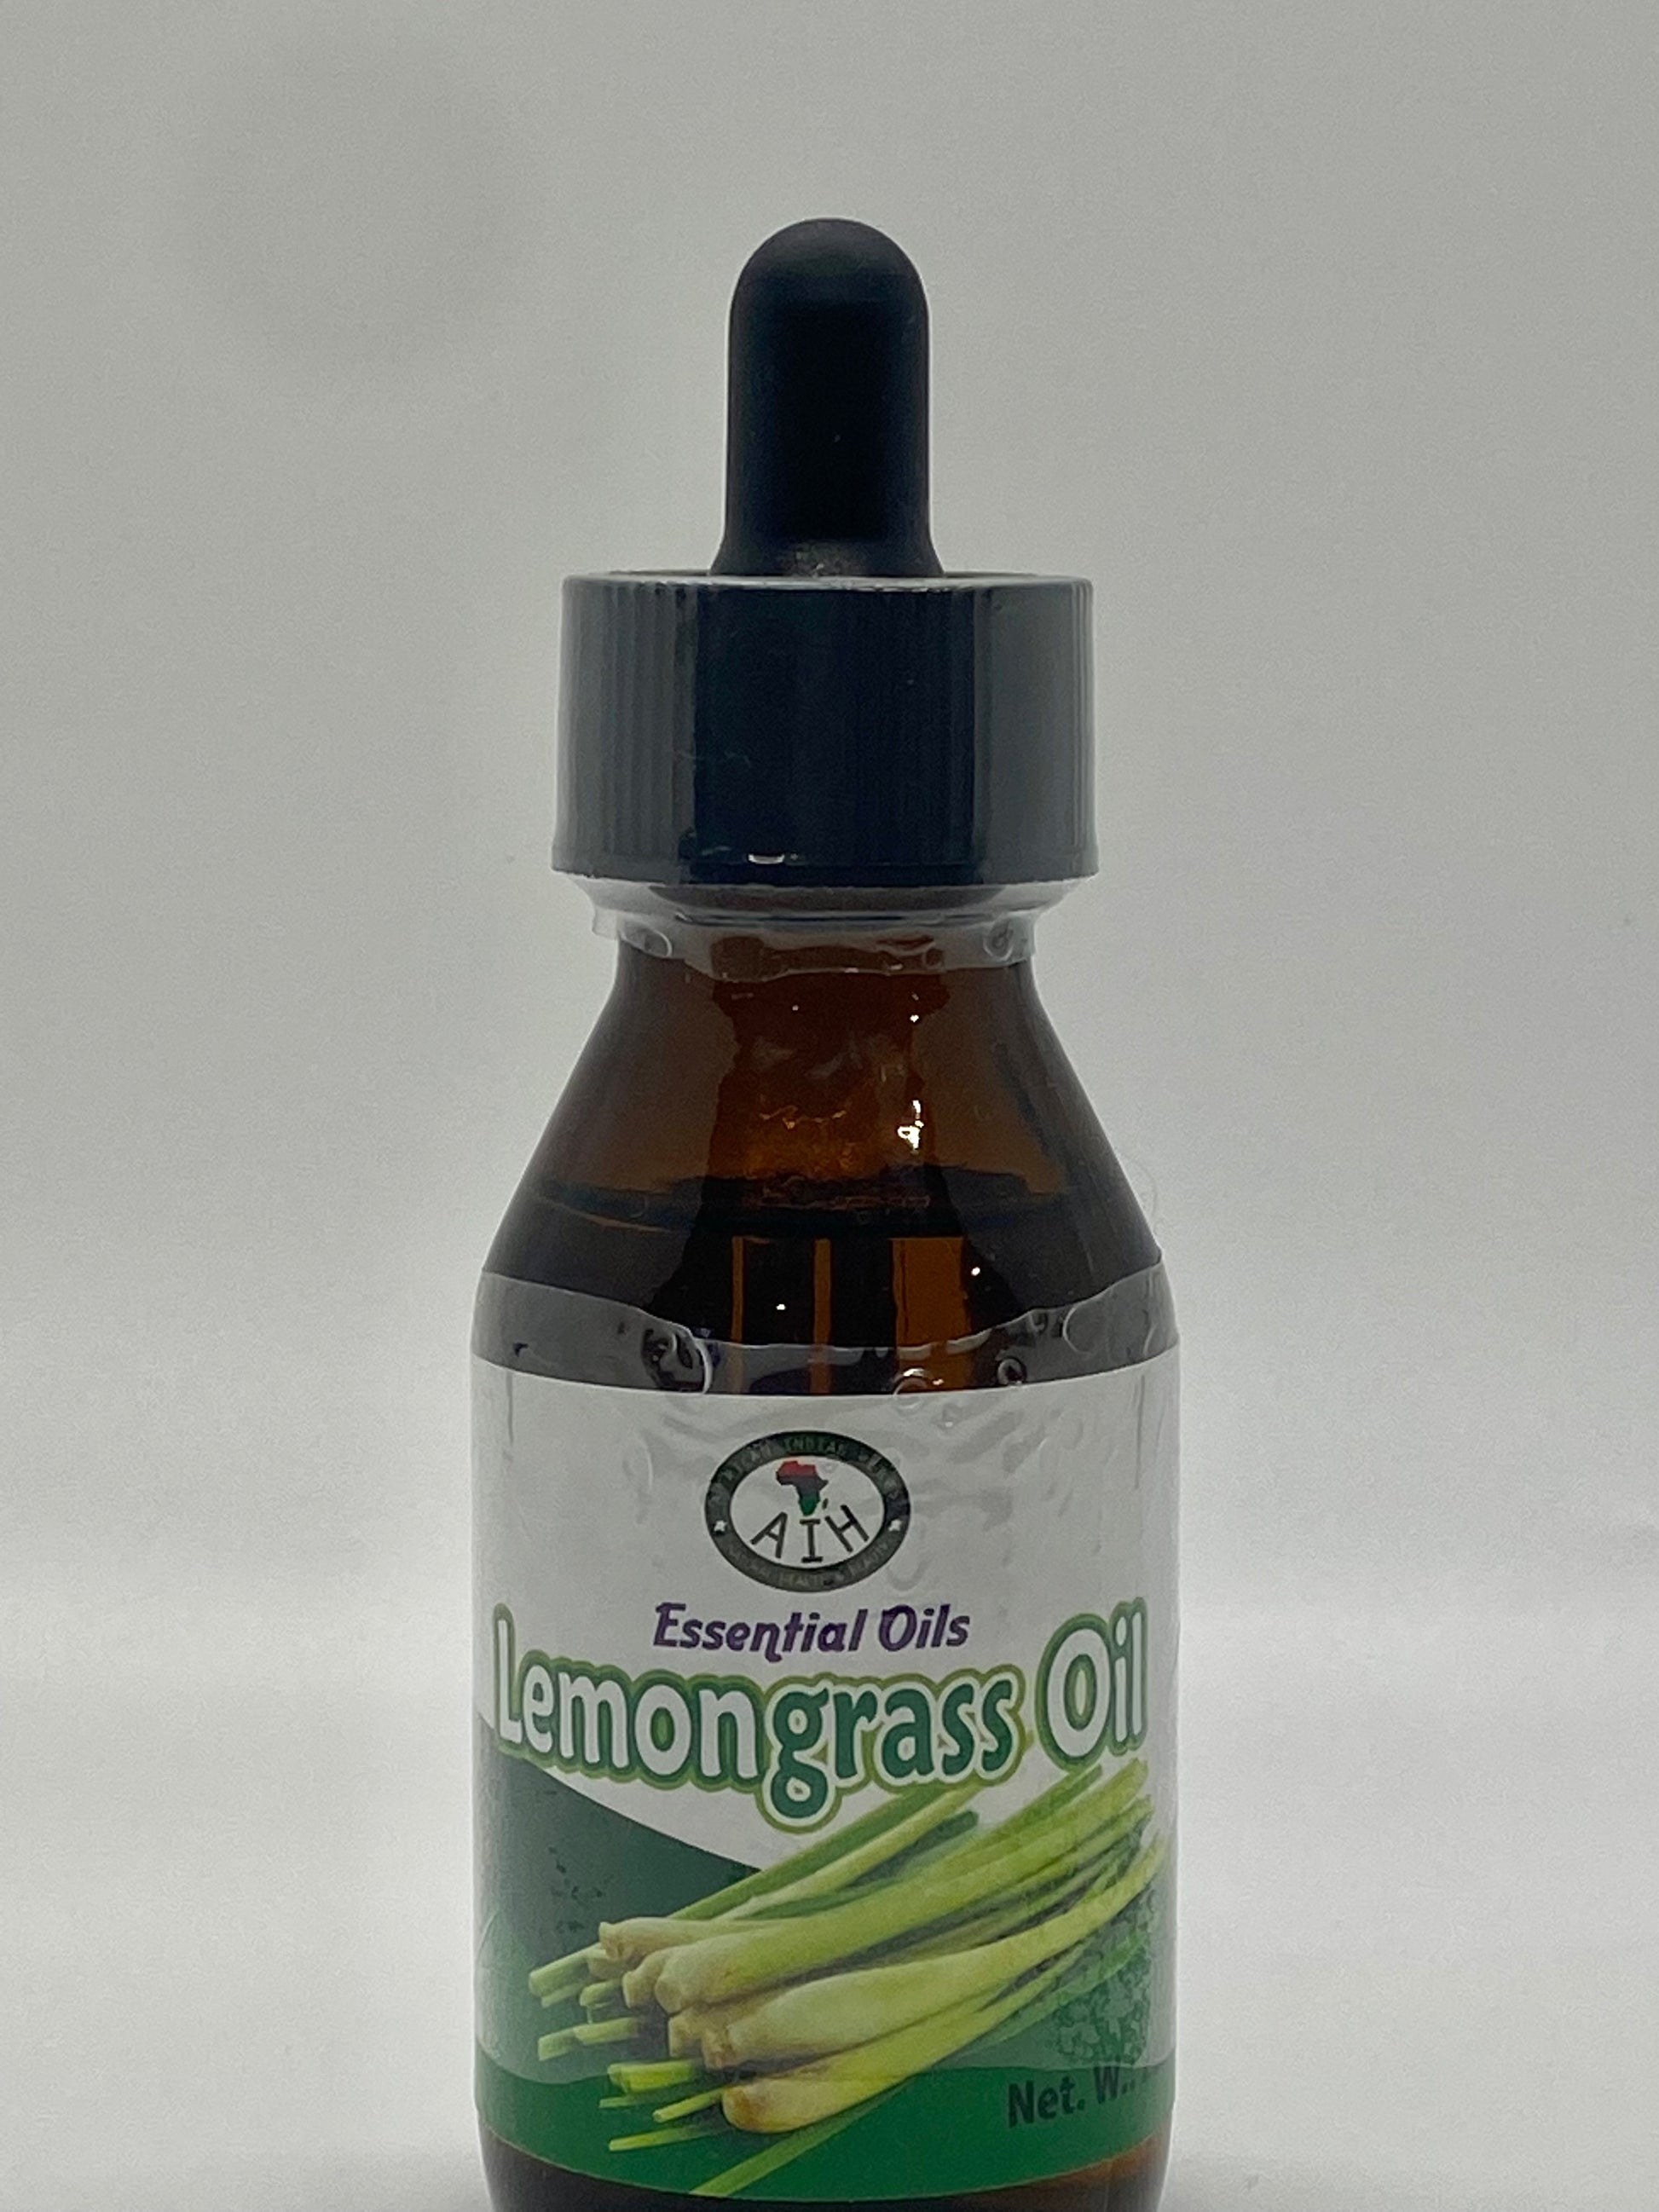 Lemongrass Oil & Lemongrass, Essential Oils